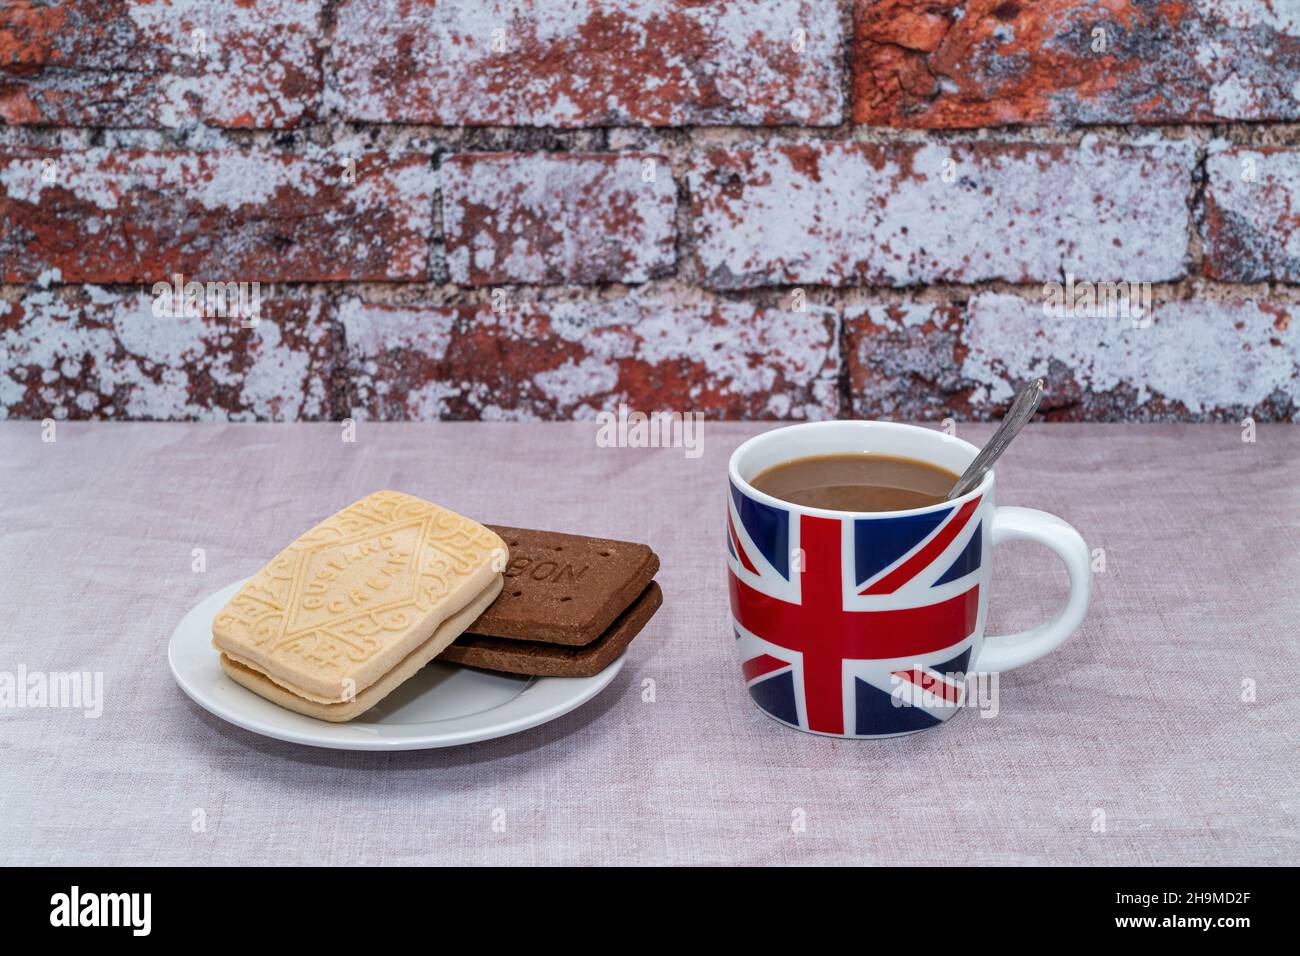 Tazza inglese stampata con una bandiera UK Union Jack con crema pasticcera e biscotti borbonici al cioccolato Foto Stock